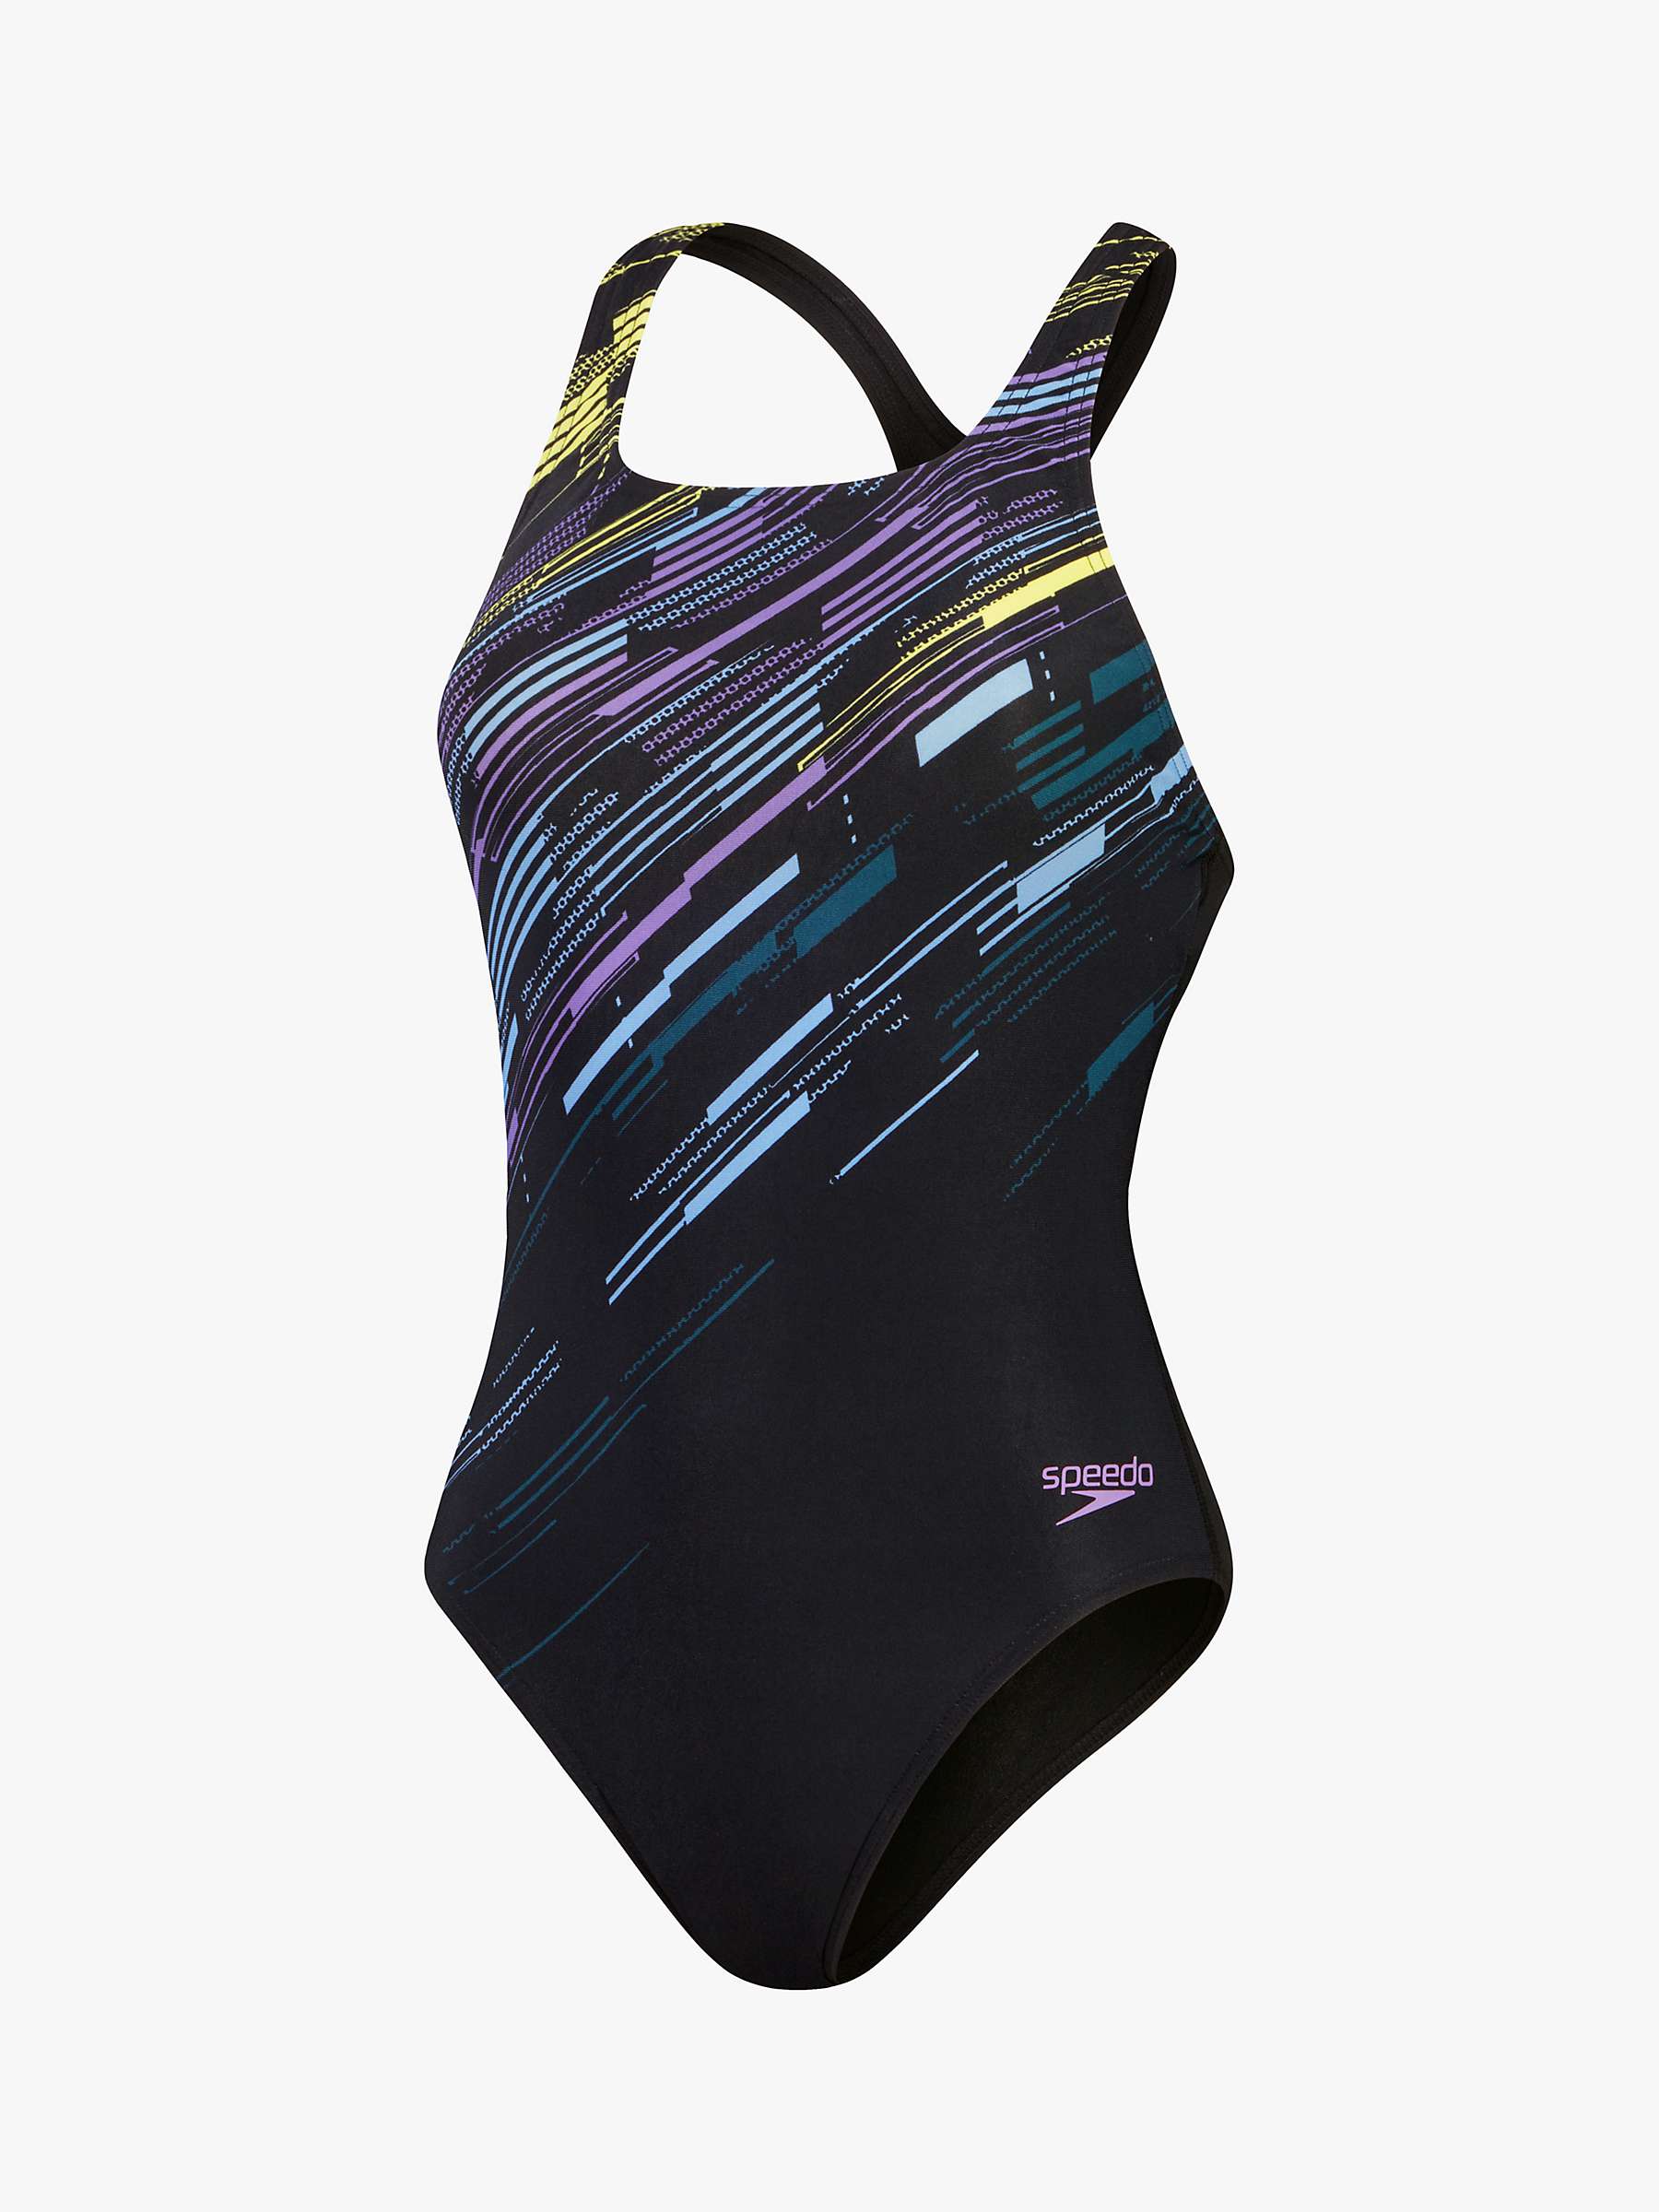 Buy Speedo Printed Medalist Recycled Swimsuit, Black Online at johnlewis.com